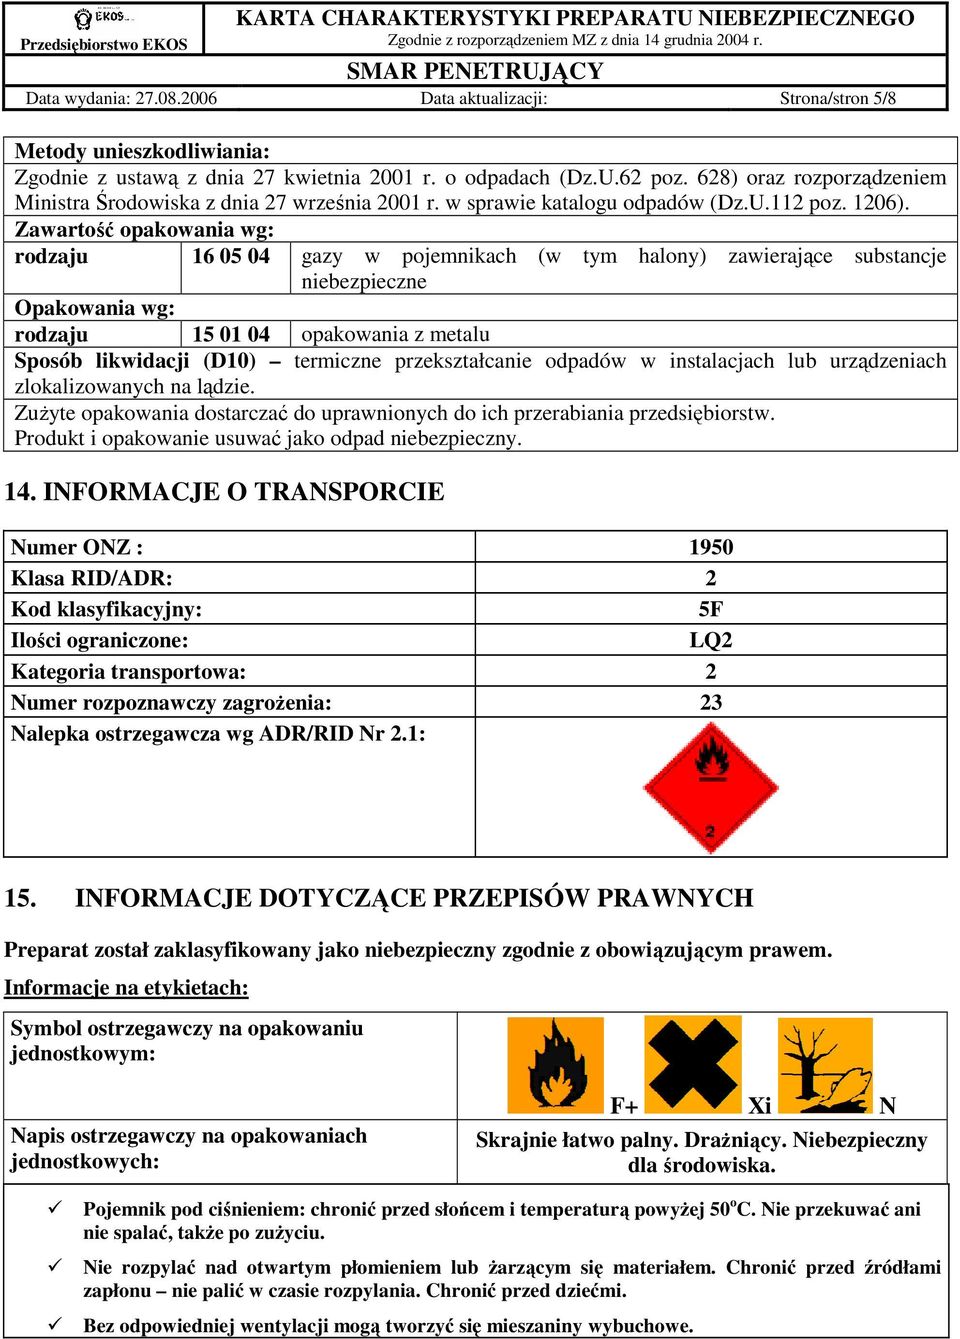 Zawartość opakowania wg: rodzaju 16 05 04 gazy w pojemnikach (w tym halony) zawierające substancje niebezpieczne Opakowania wg: rodzaju 15 01 04 opakowania z metalu Sposób likwidacji (D10) termiczne